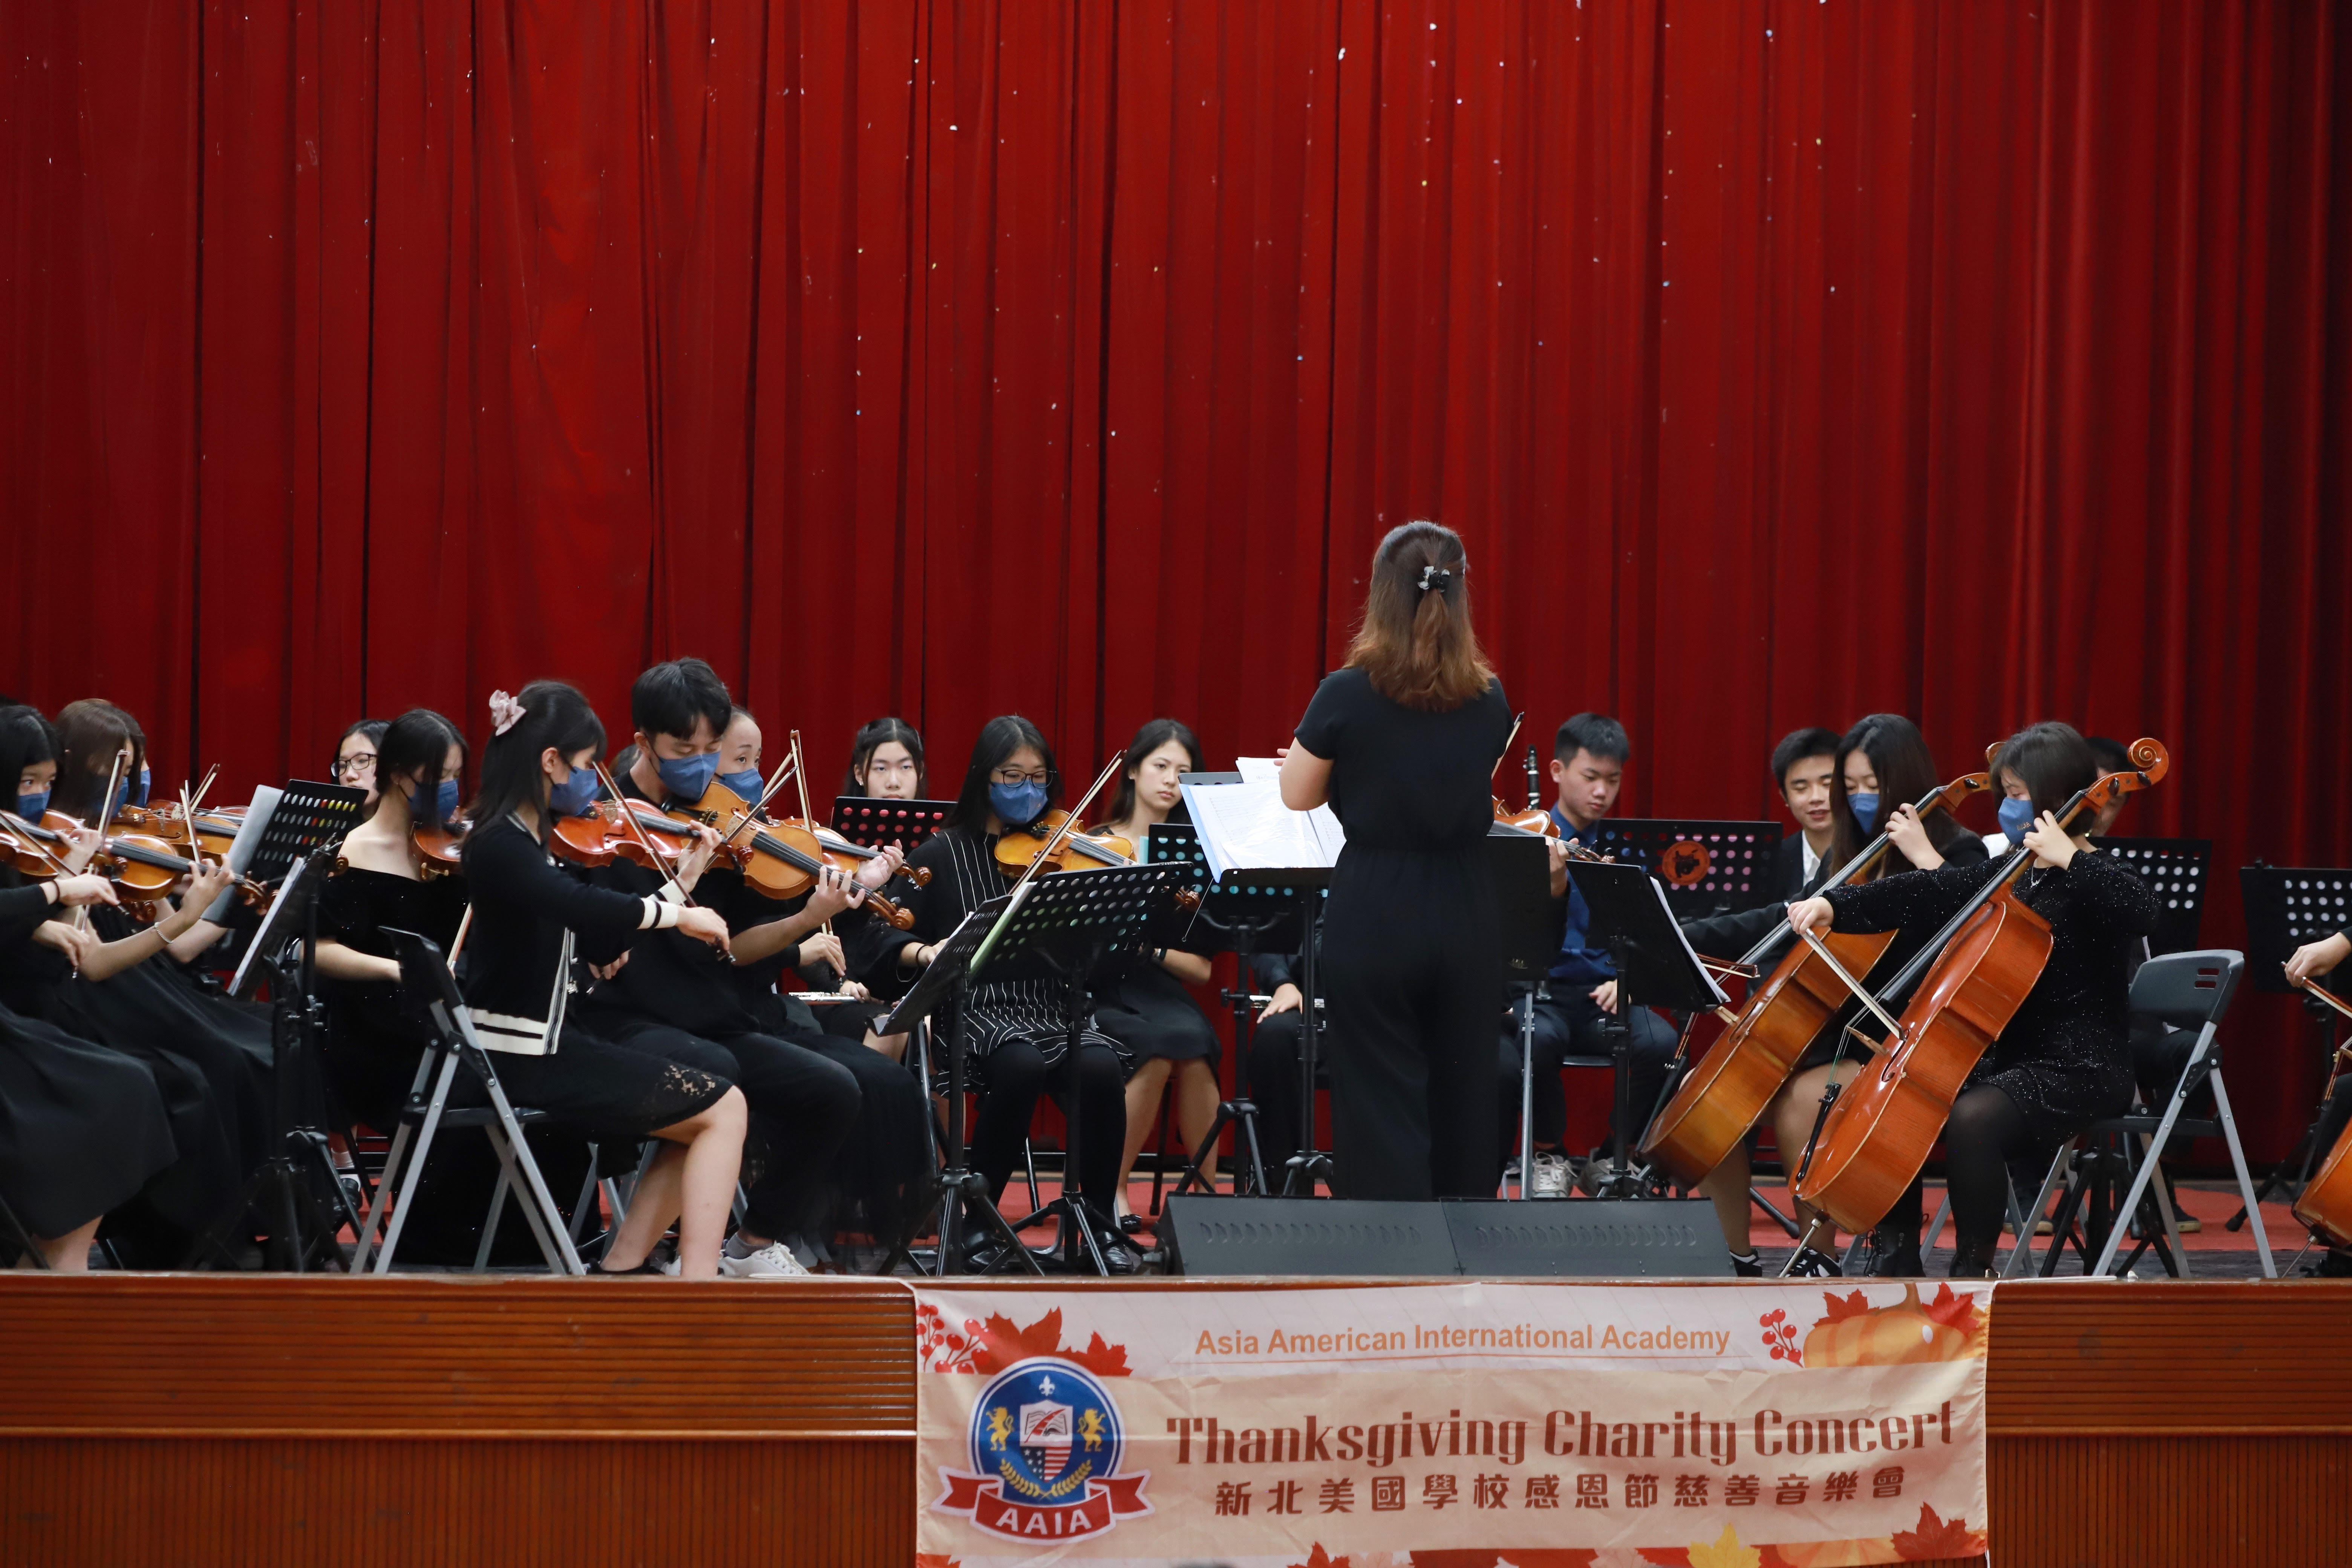 新北美國學校管弦樂隊以當”電影與音樂相遇”為主題演奏組曲.jpg